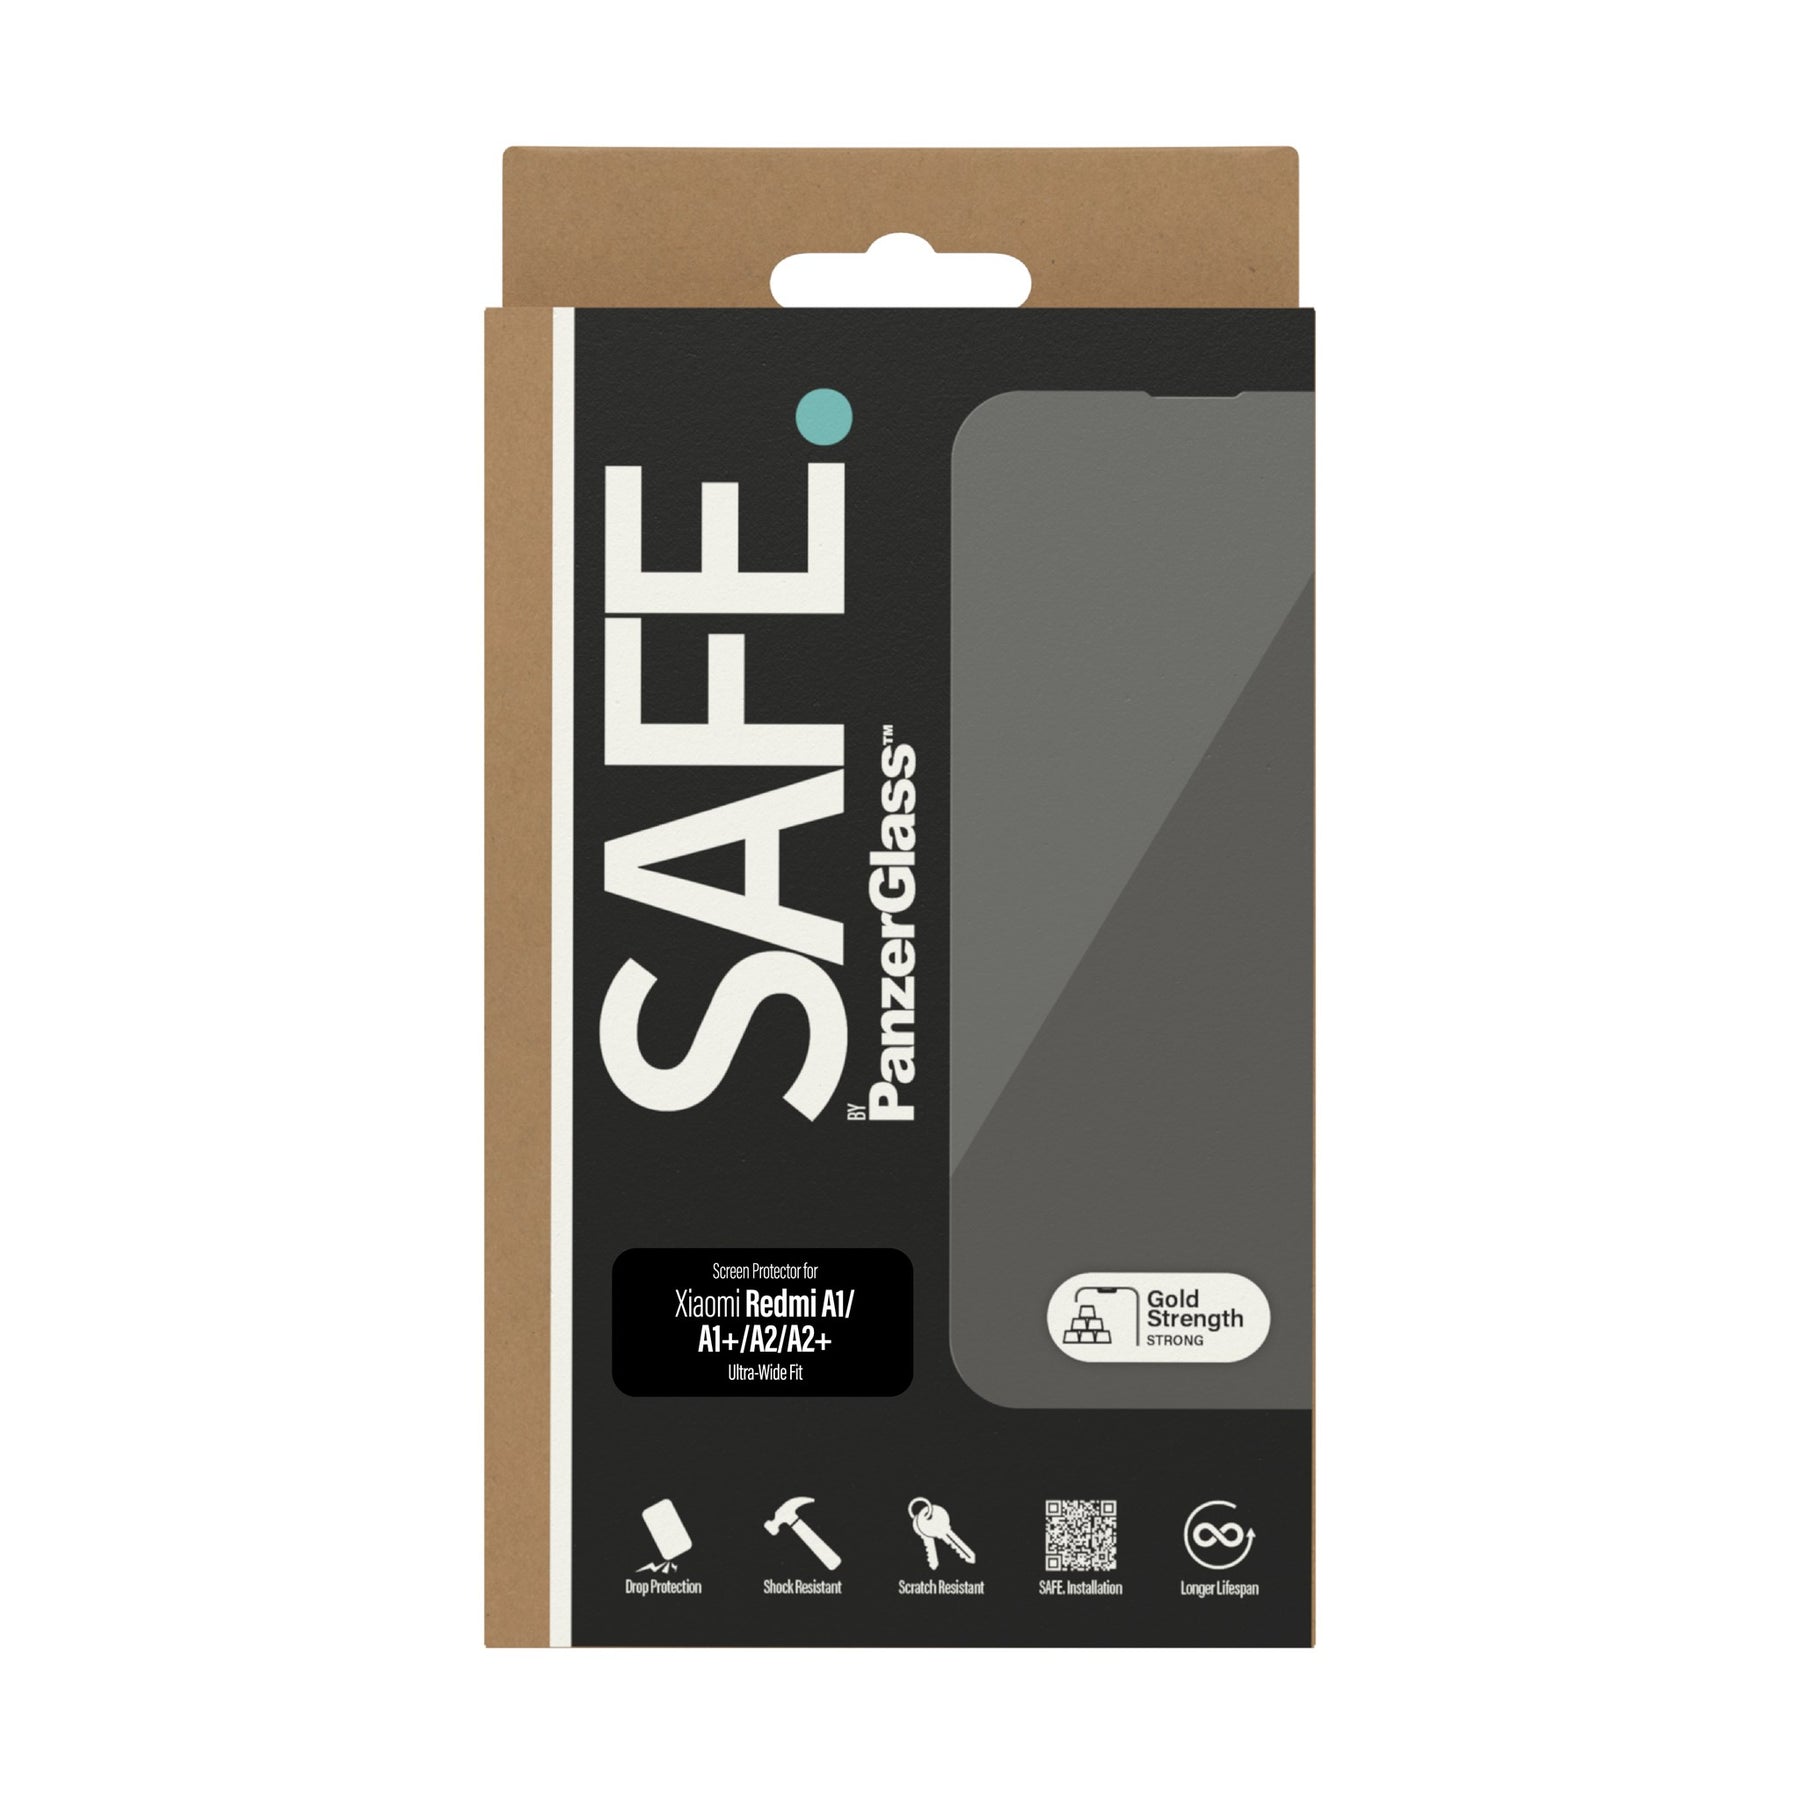 SAFE. by PanzerGlass™ Screen Protector Xiaomi Redmi A1 | A1+ | A2 | A2+ | Ultra-Wide Fit 3